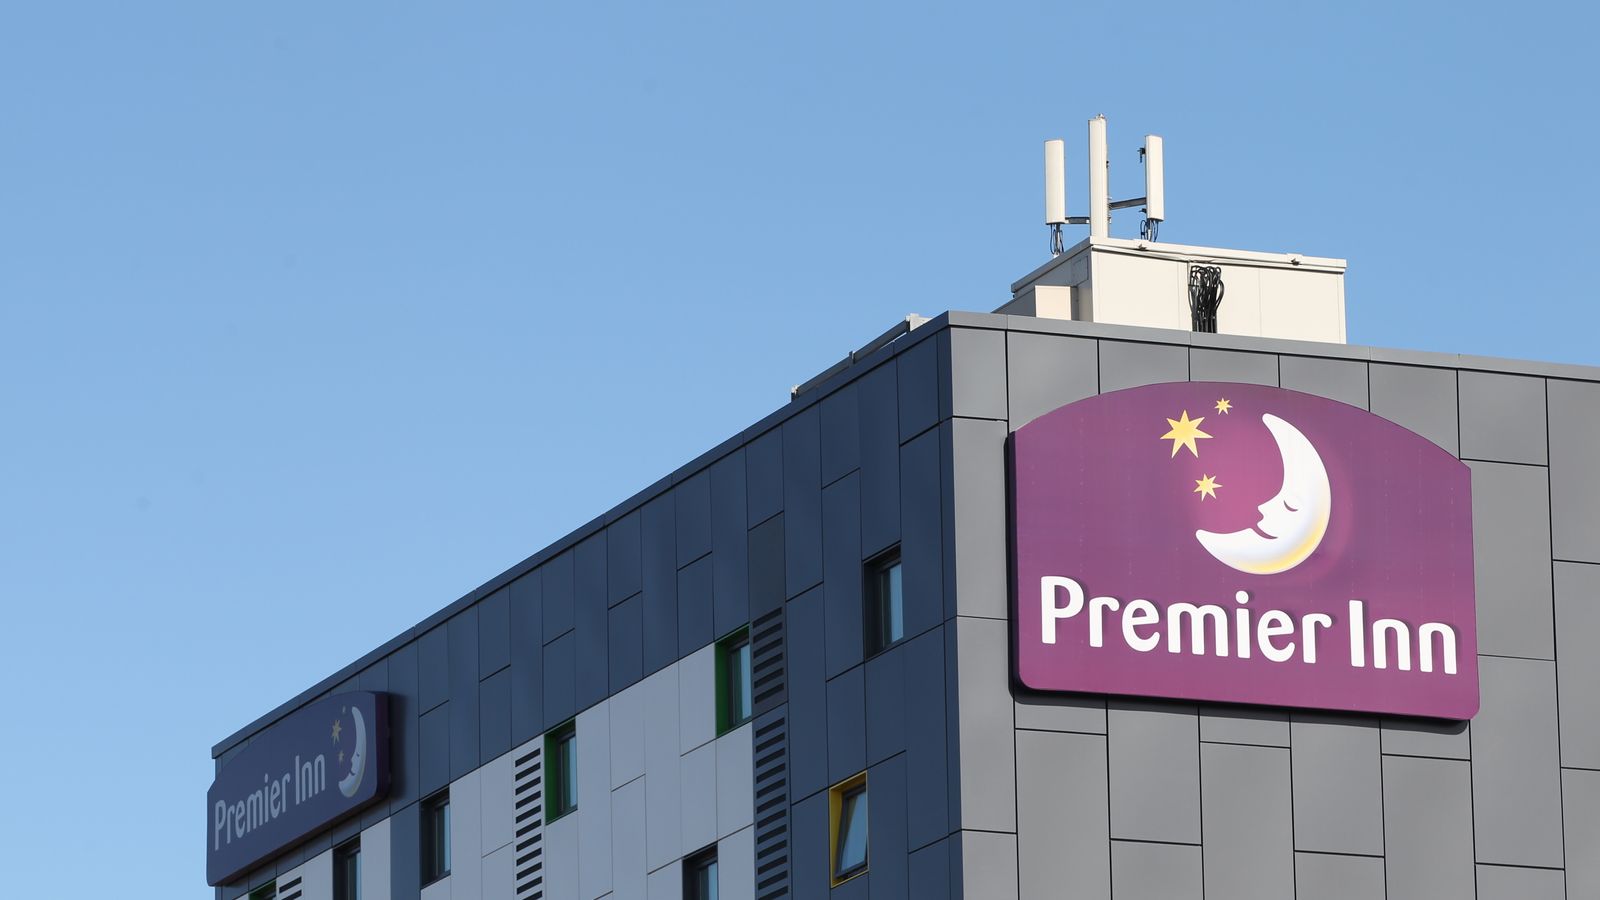 Premier Inn забранено да рекламира стаи `само от £35 на вечер` от рекламния орган